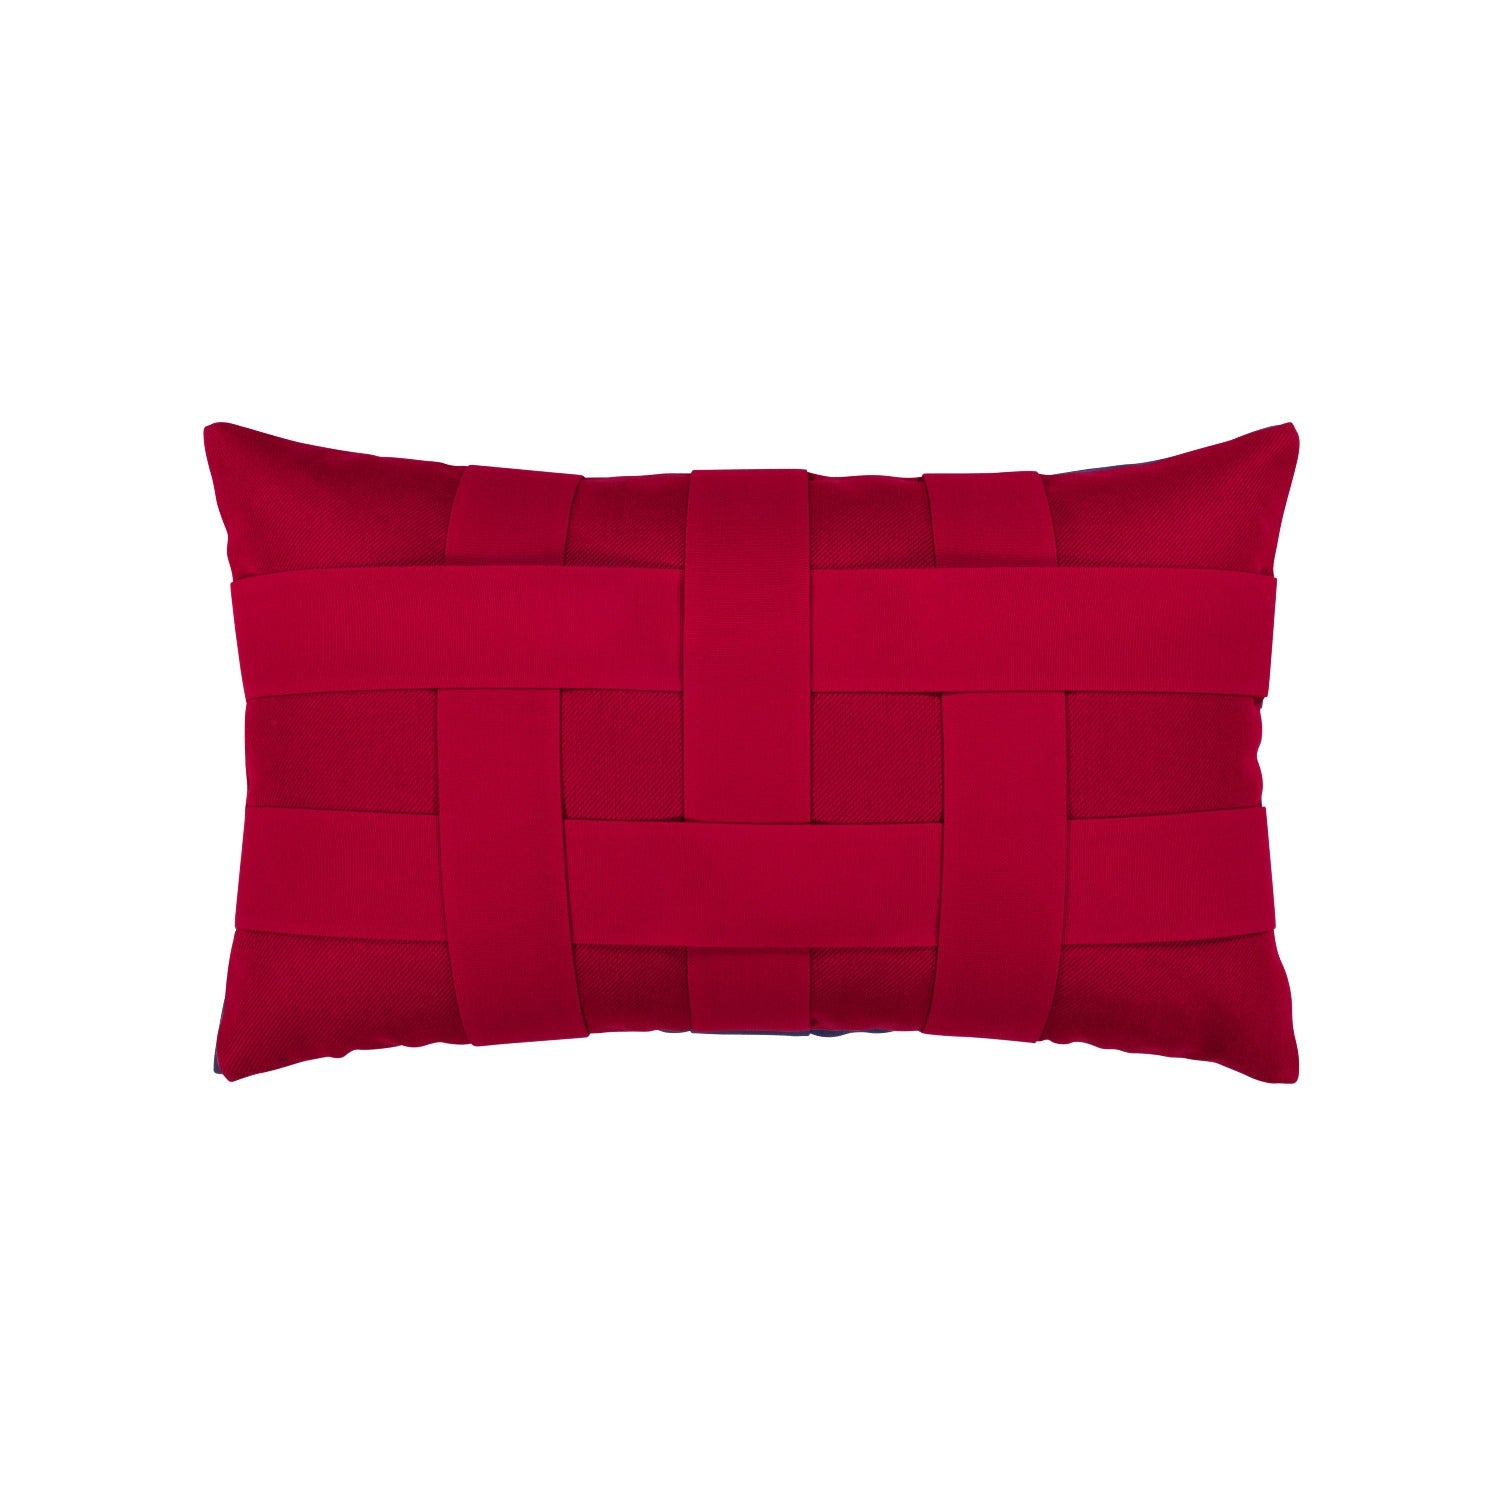 Elaine Smith Basketweave Rouge Lumbar Pillow Throw Pillows 12031013